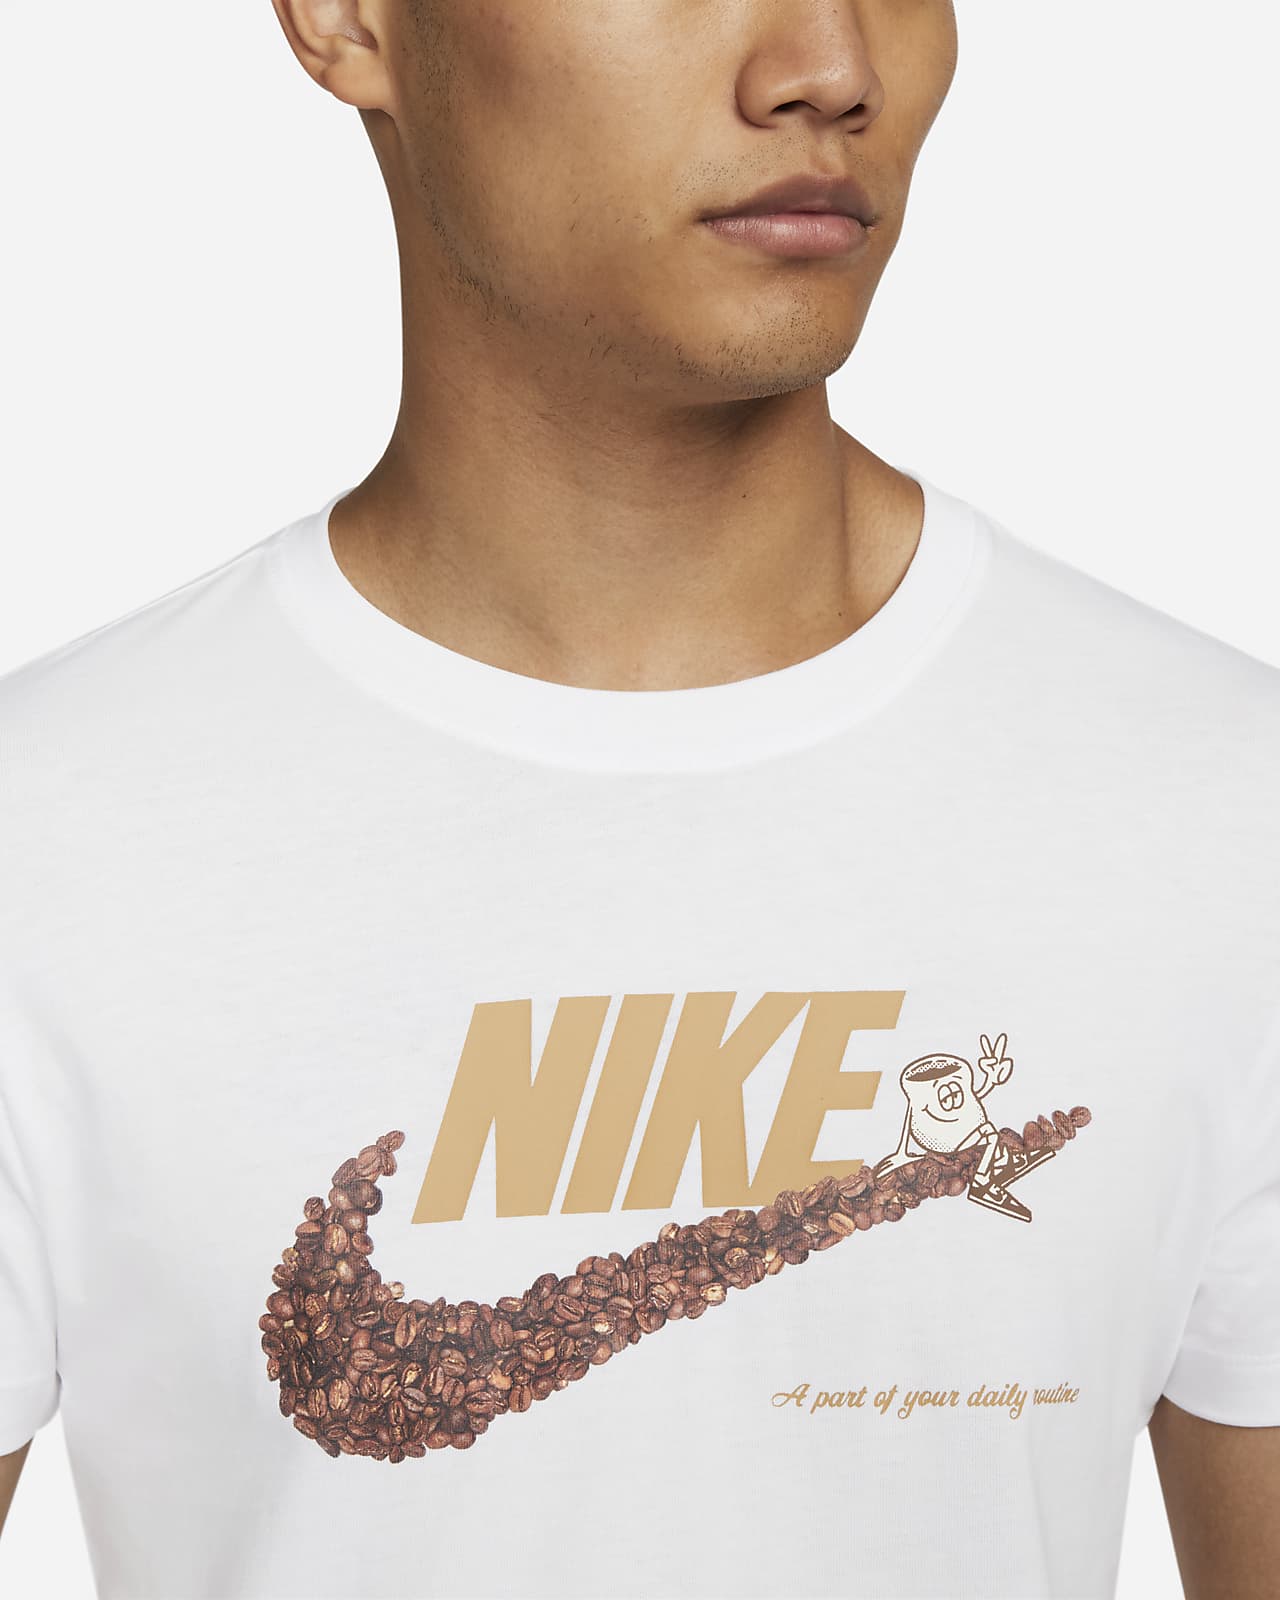 NIKE公式】ナイキ スポーツウェア メンズ Tシャツ.オンラインストア (通販サイト)